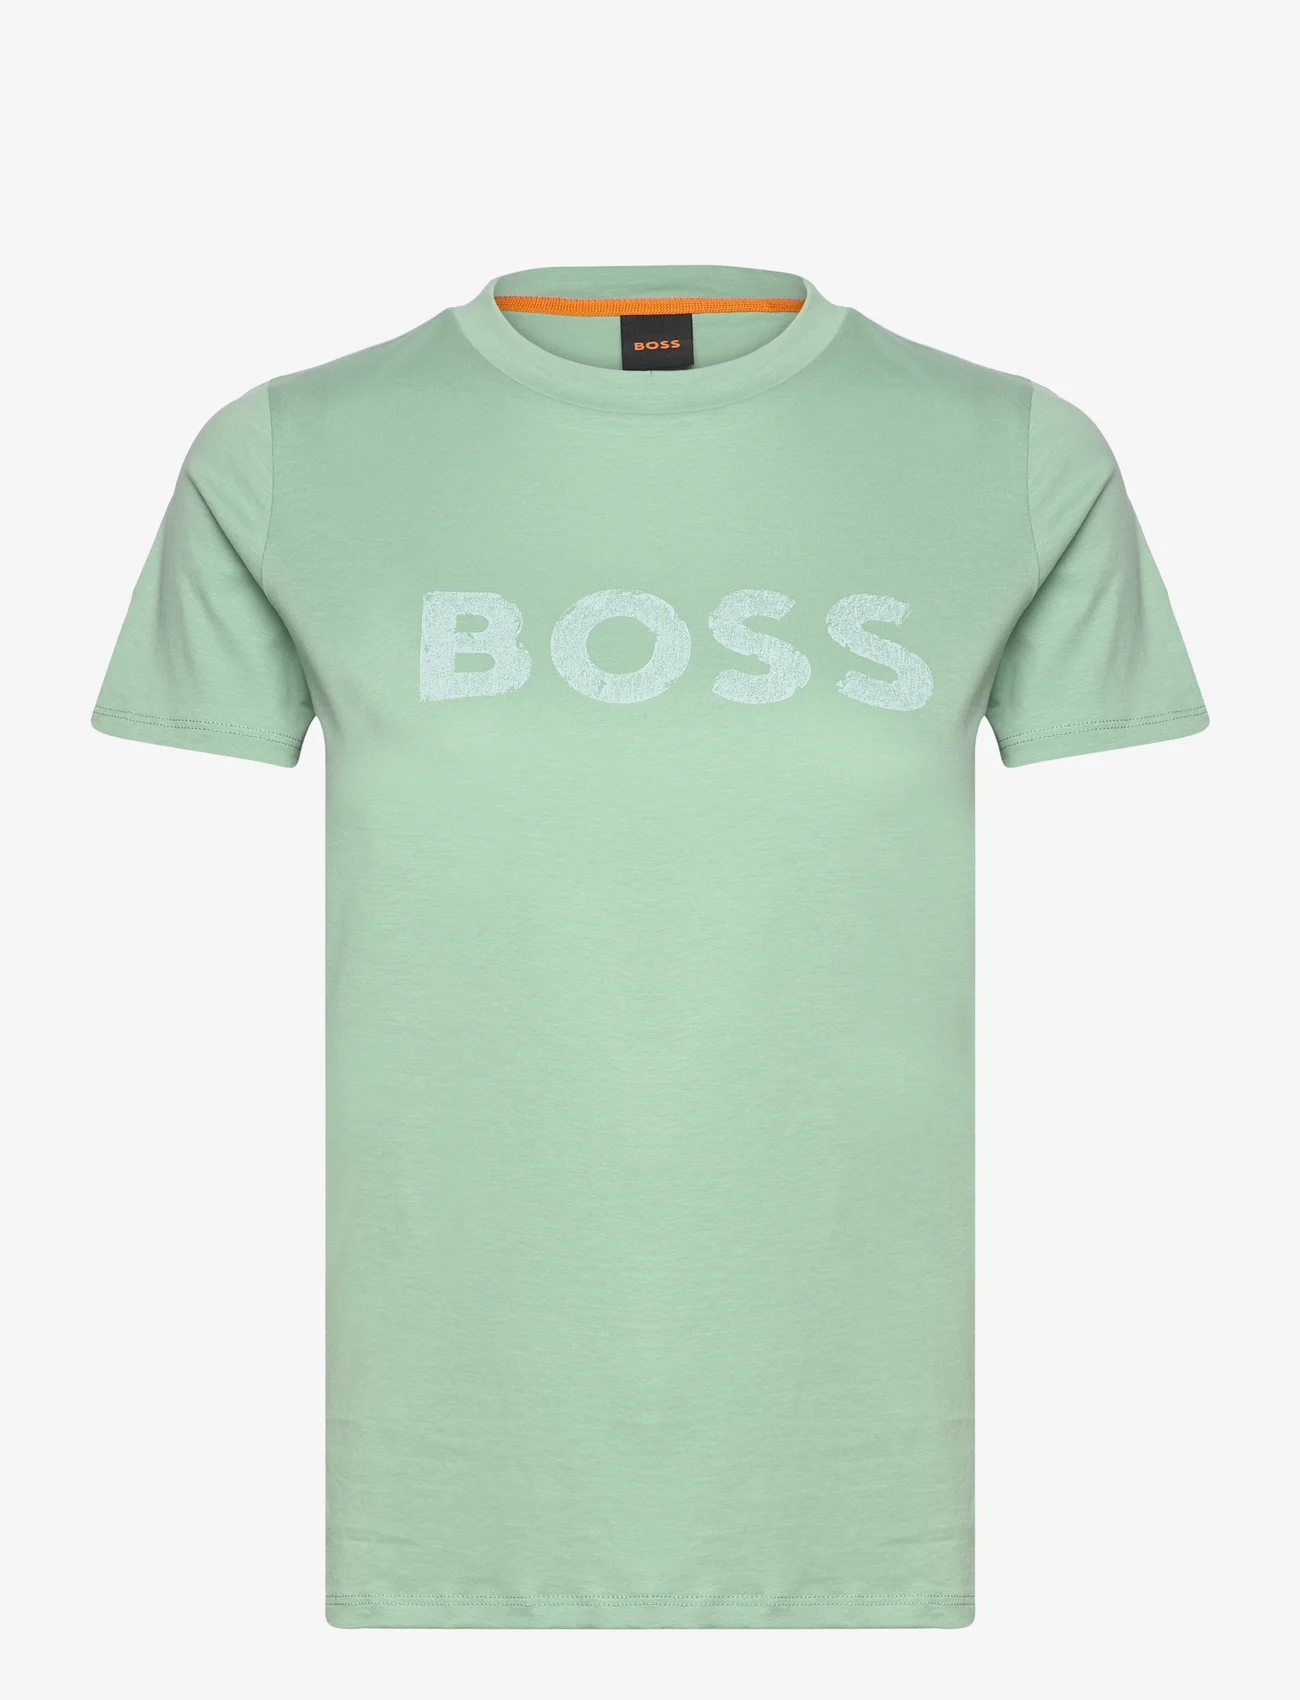 BOSS - C_Elogo_5 - t-shirts - open green - 0